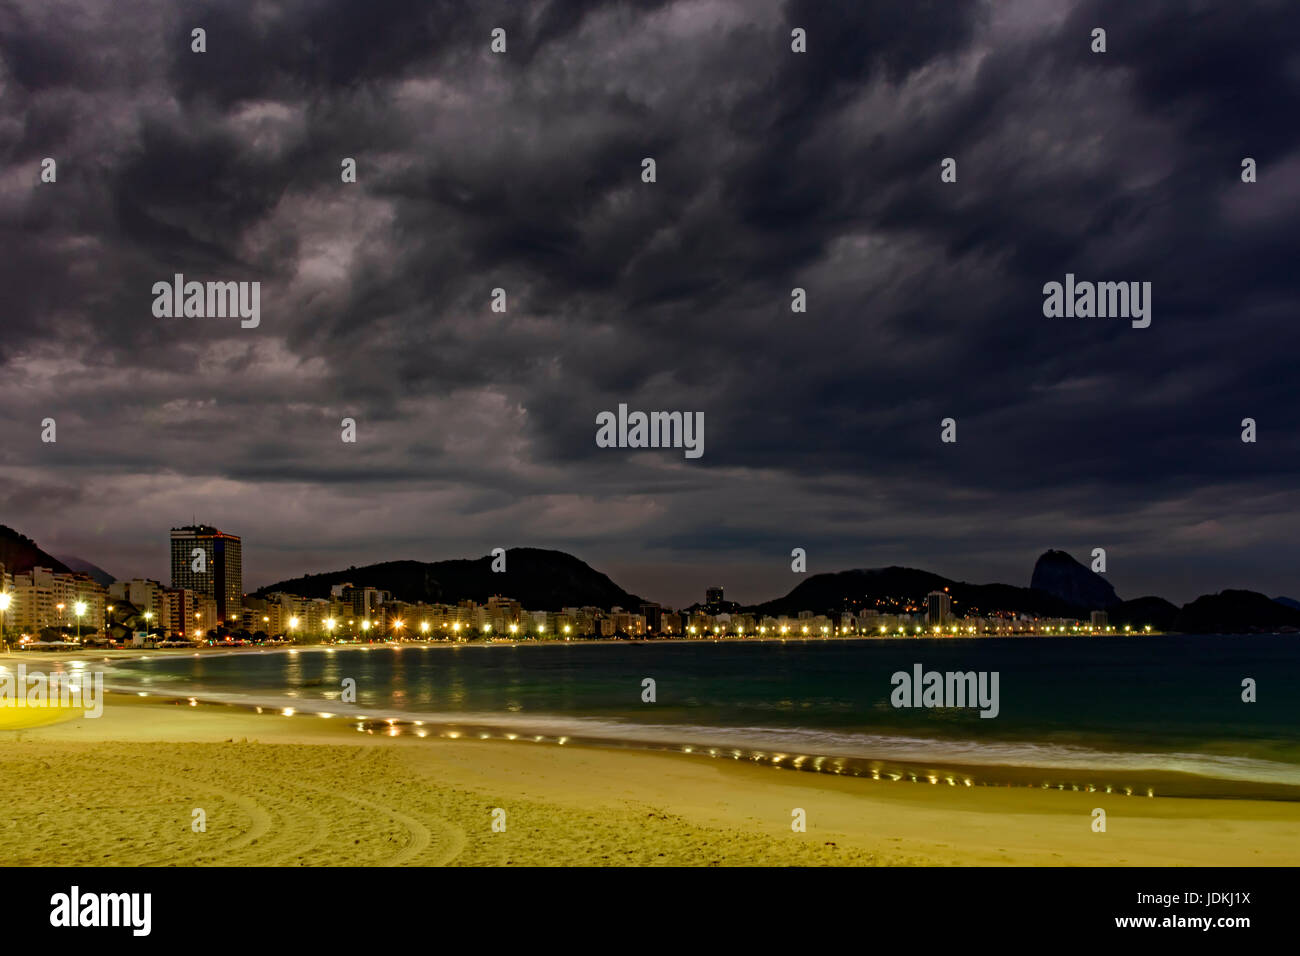 La plage de Copacabana et le Pain de Sucre vu la nuit avec ses bâtiments, l'éclairage, la mer, les collines et les contours Banque D'Images